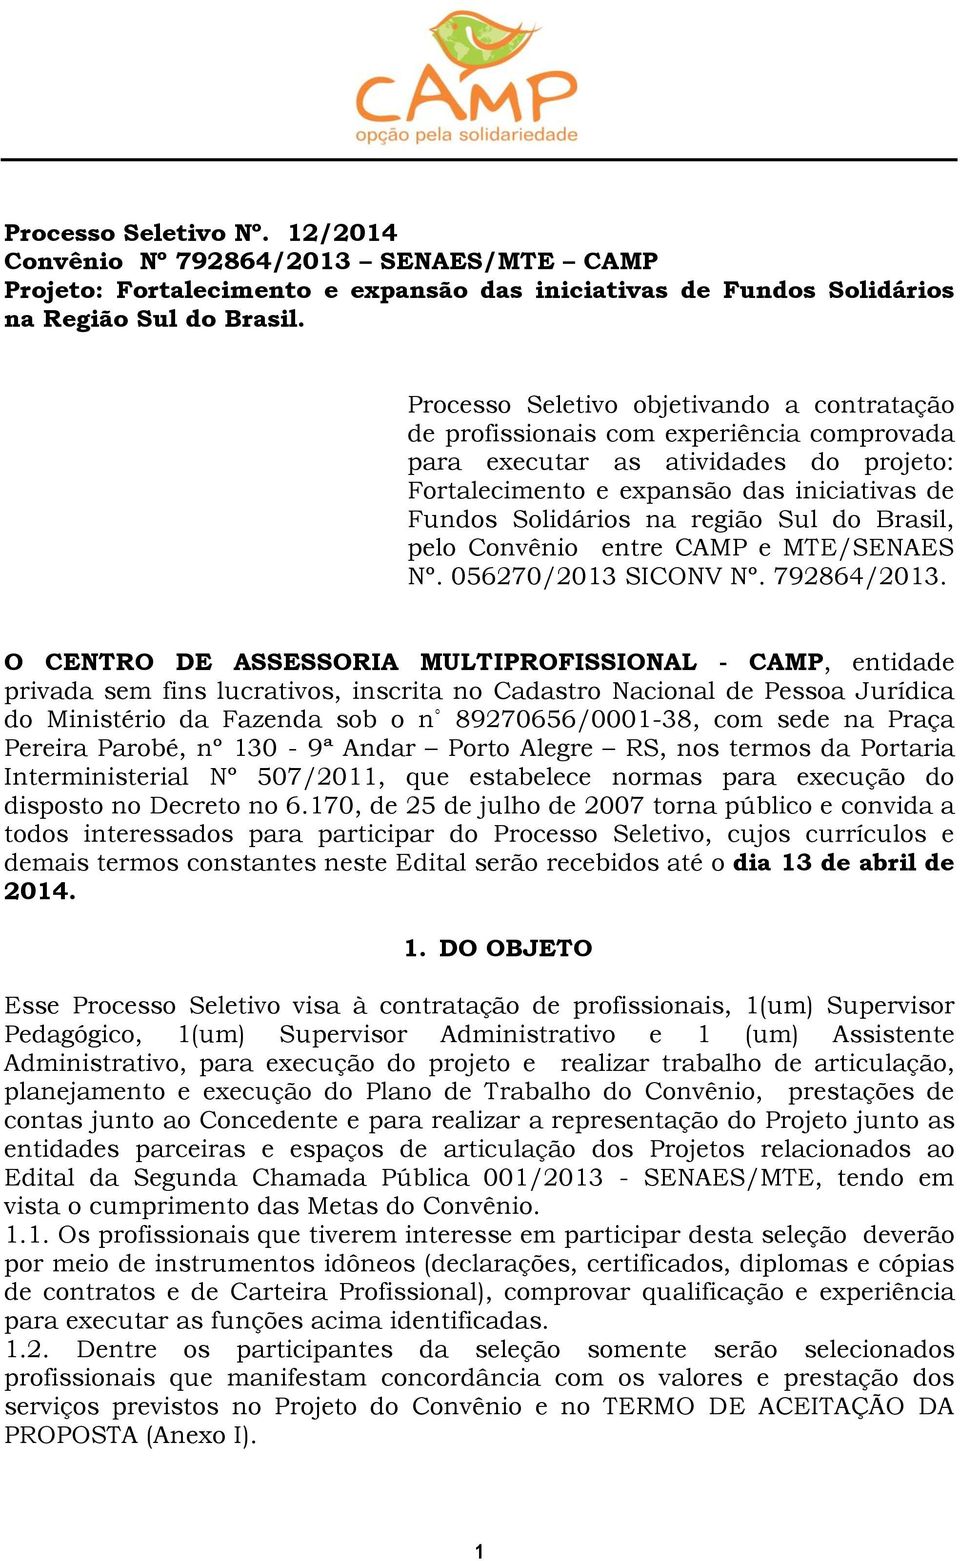 região Sul do Brasil, pelo Convênio entre CAMP e MTE/SENAES Nº. 056270/2013 SICONV Nº. 792864/2013.